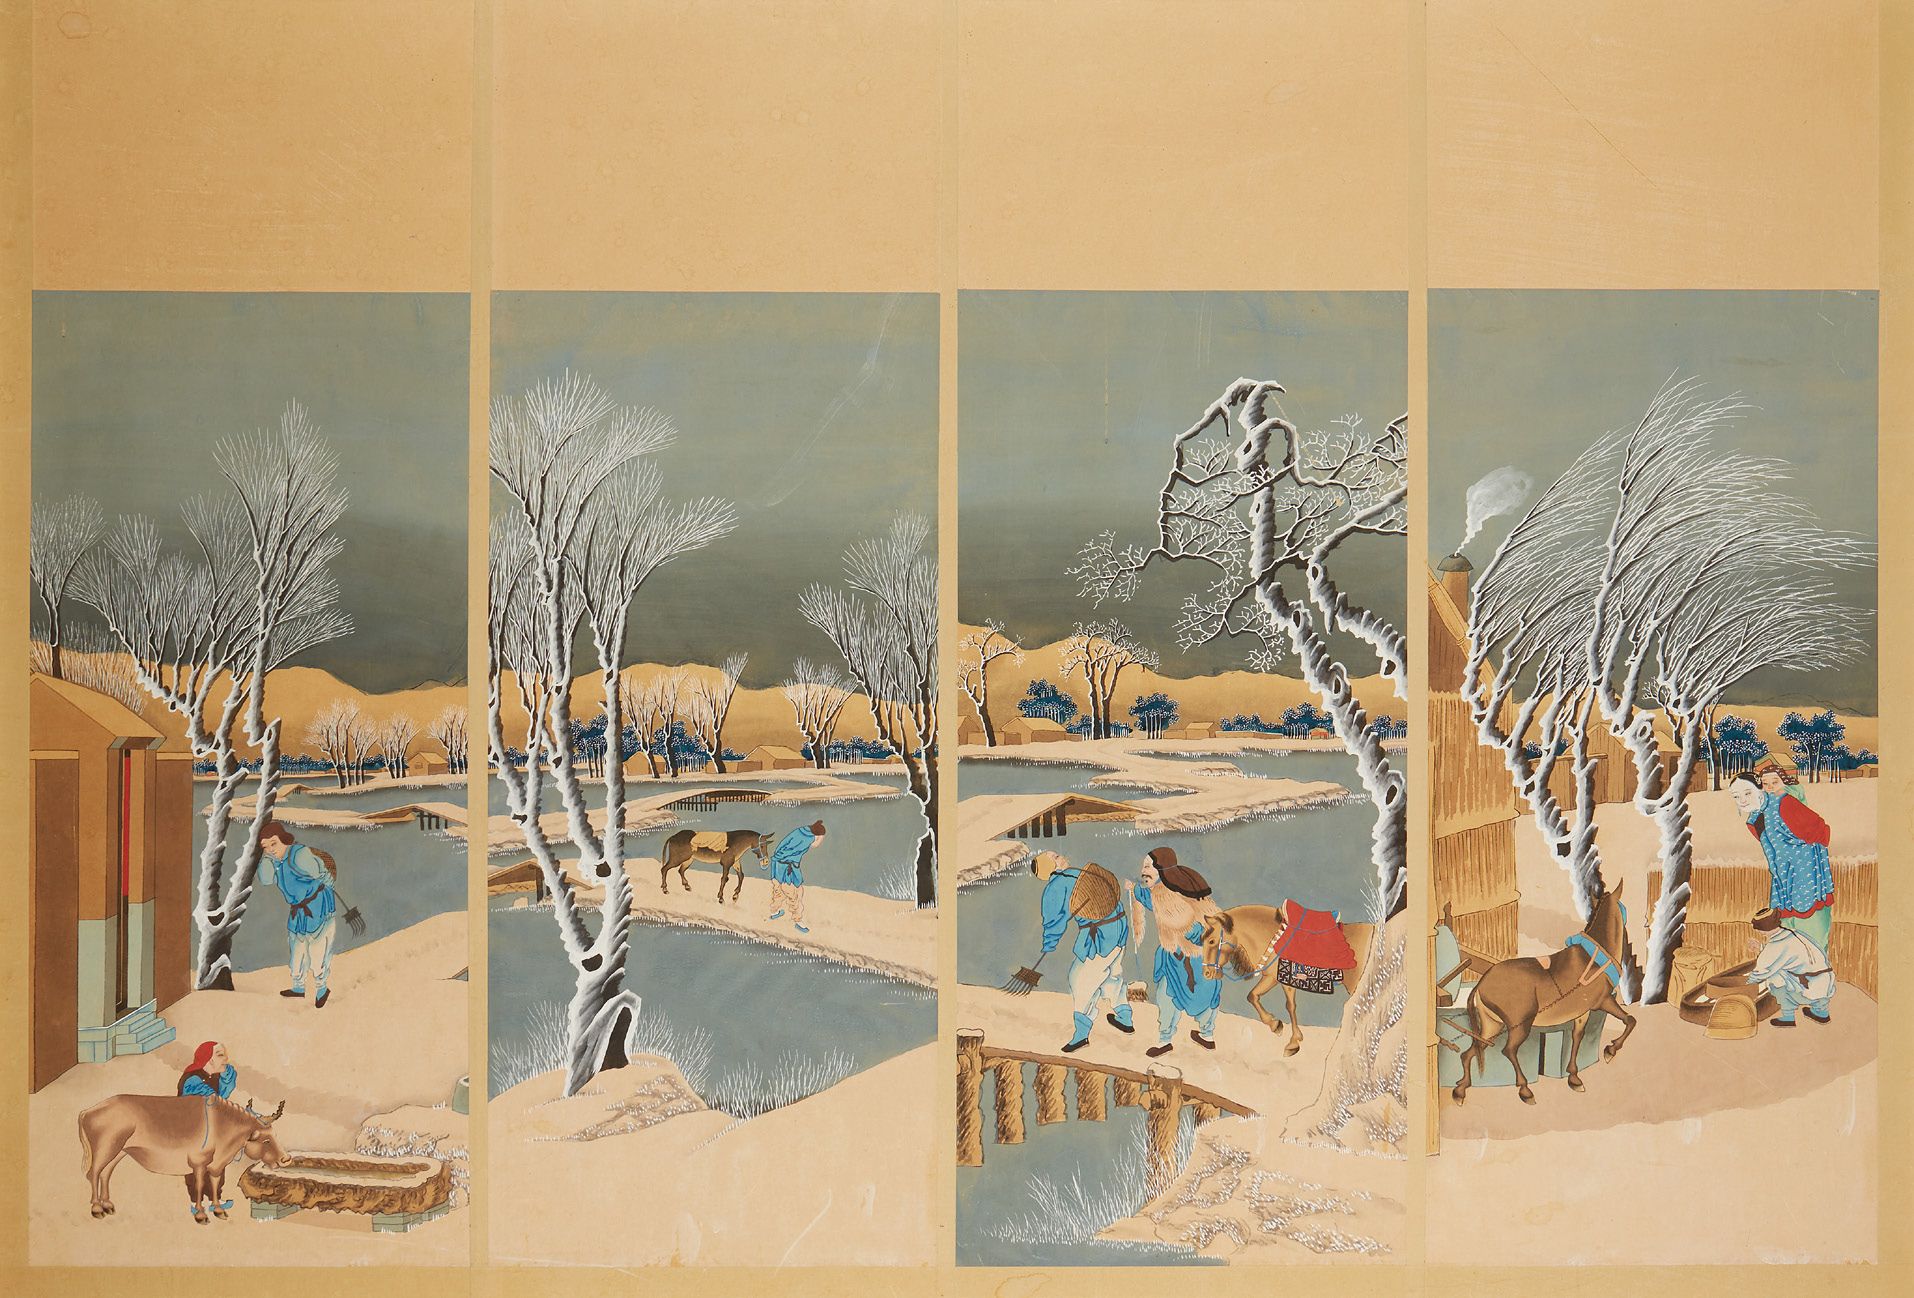 JAPON 水粉画中的四联画，描绘了冬季的过桥情况。粘在面板上
20世纪
尺寸：99 x 29厘米